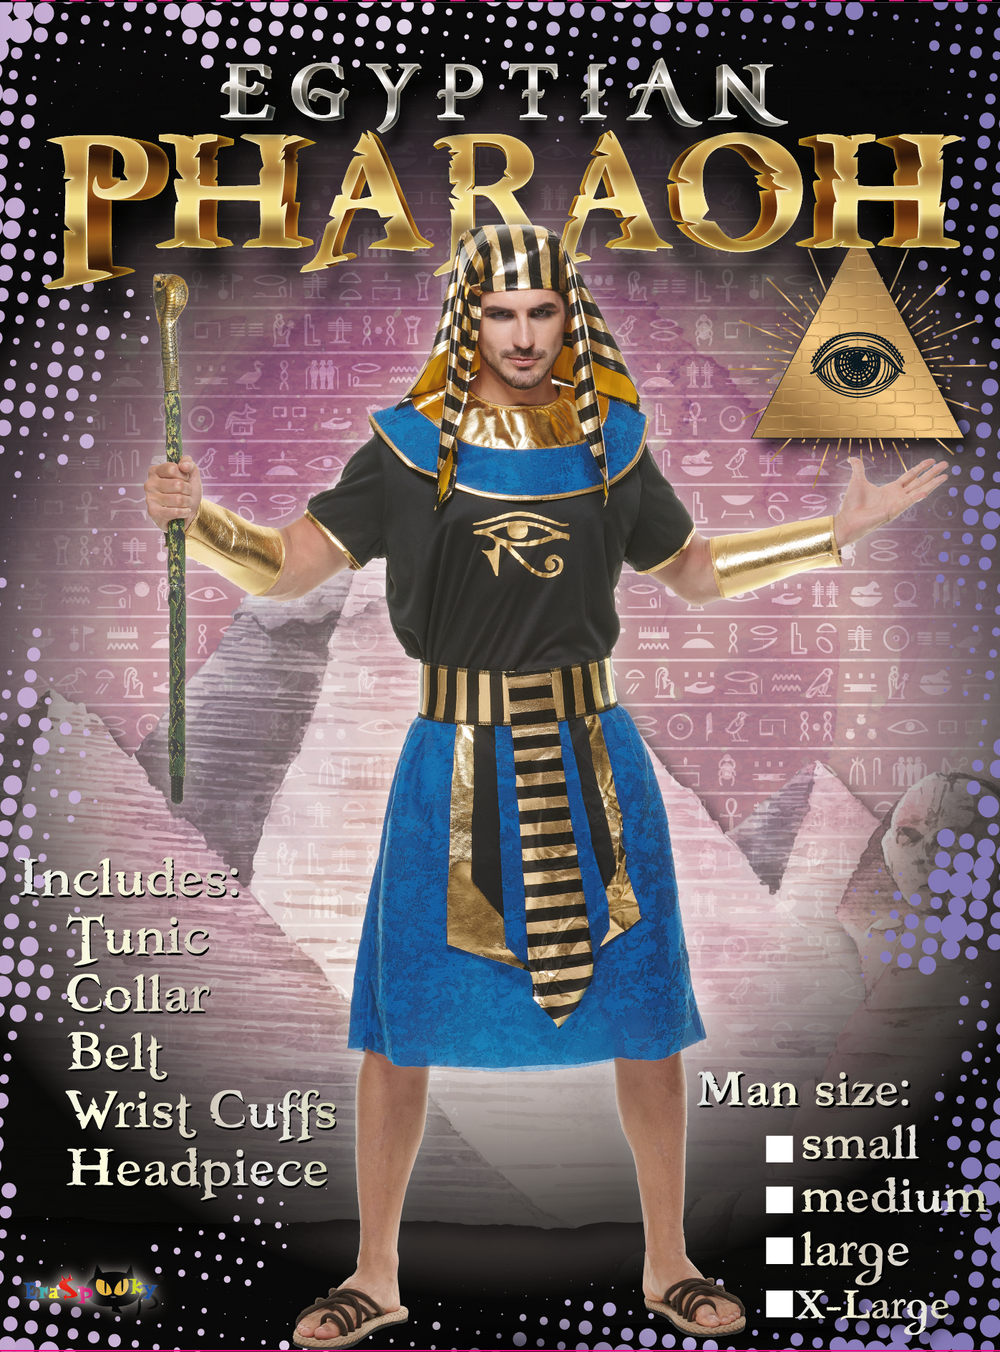 Eraspooky エジプト衣装男性ファラオ古代ローブ エジプト ファンシー ドレス